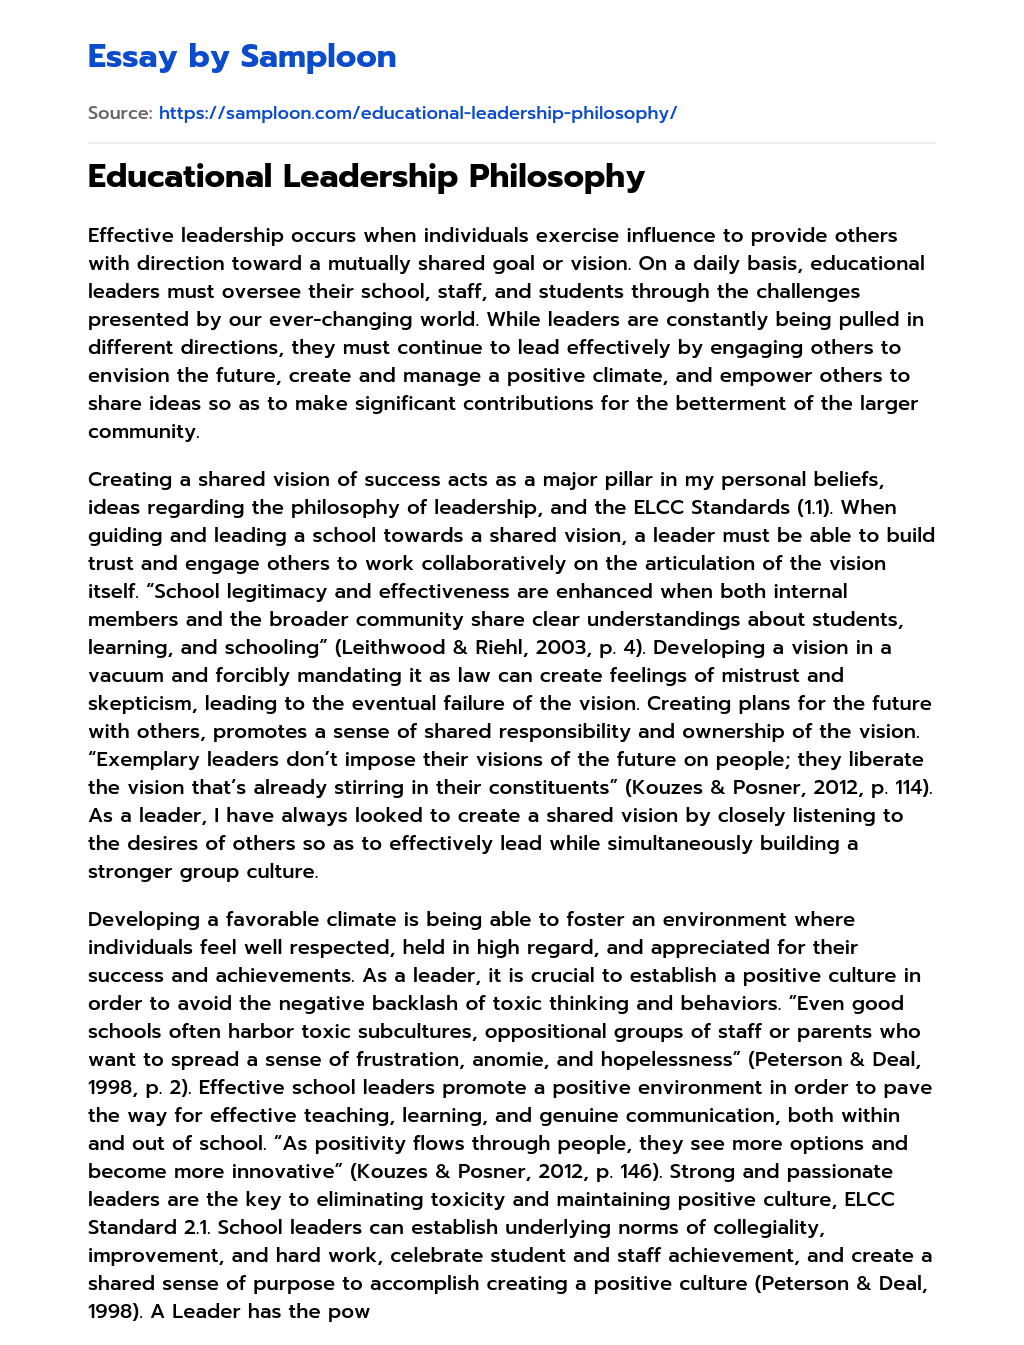 educational leadership philosophy samples